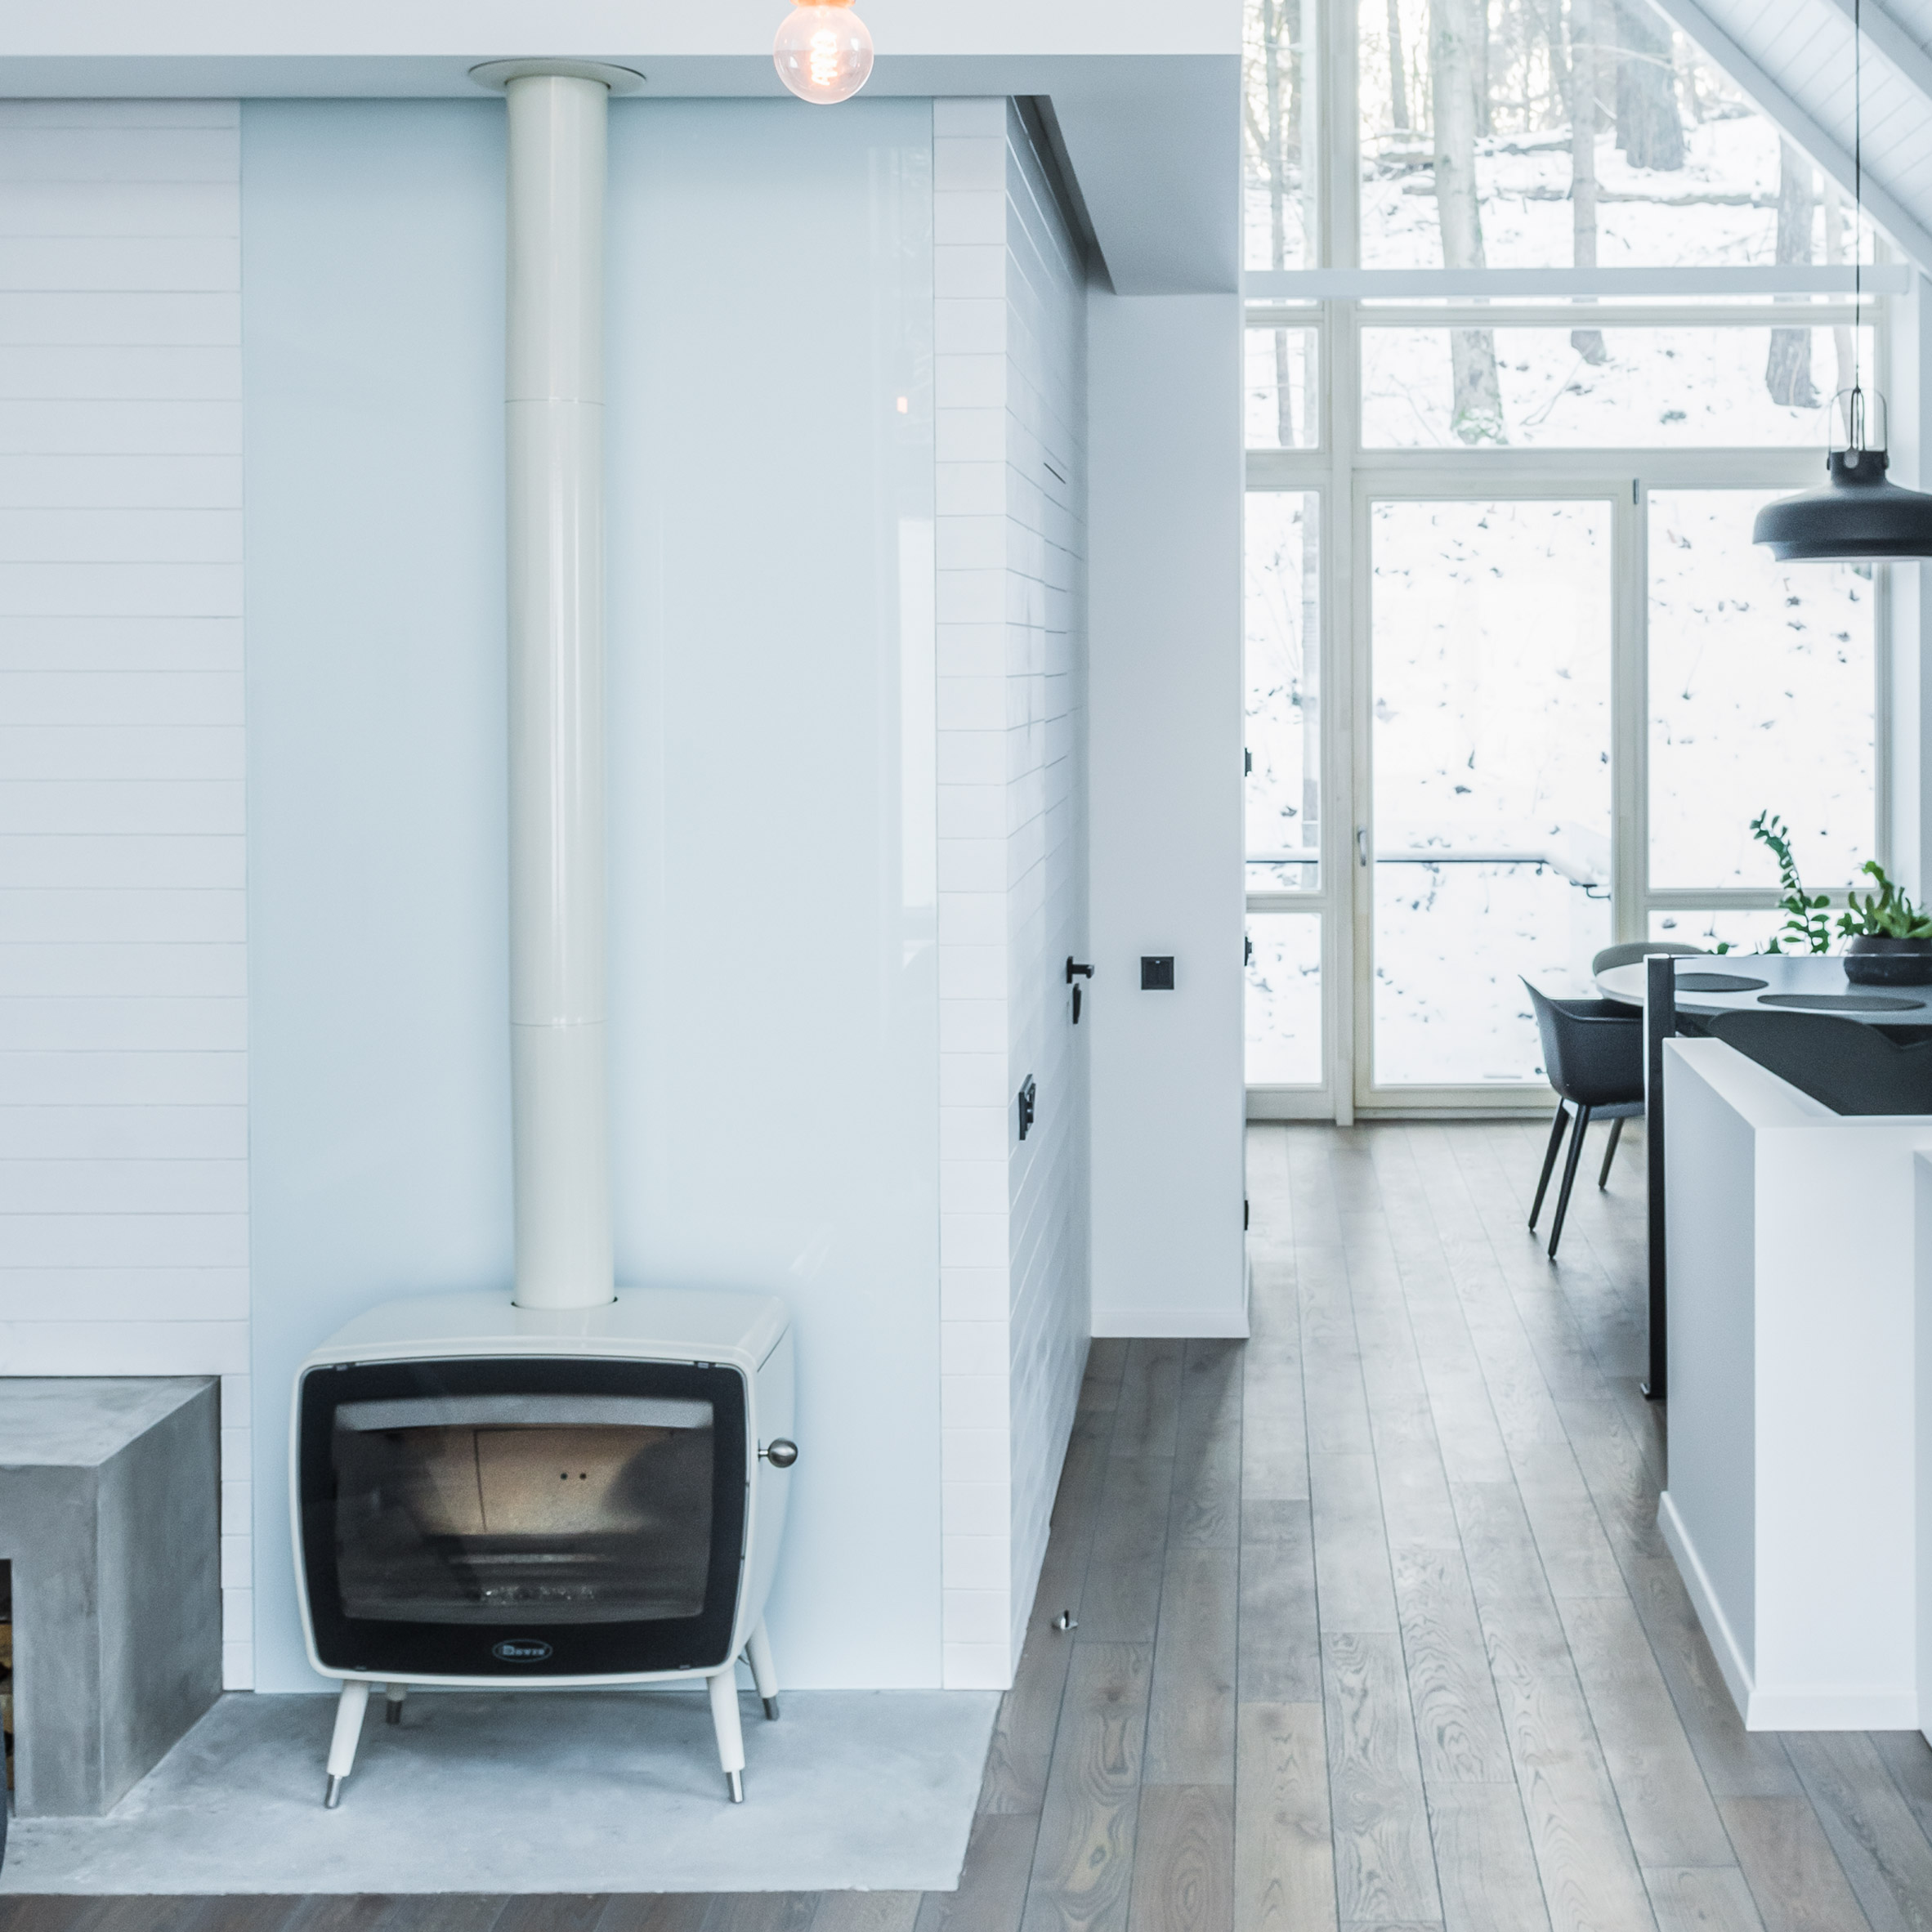 house-on-stilts-dizaino-virtuve-fireplace-dezeen-pinterest-col